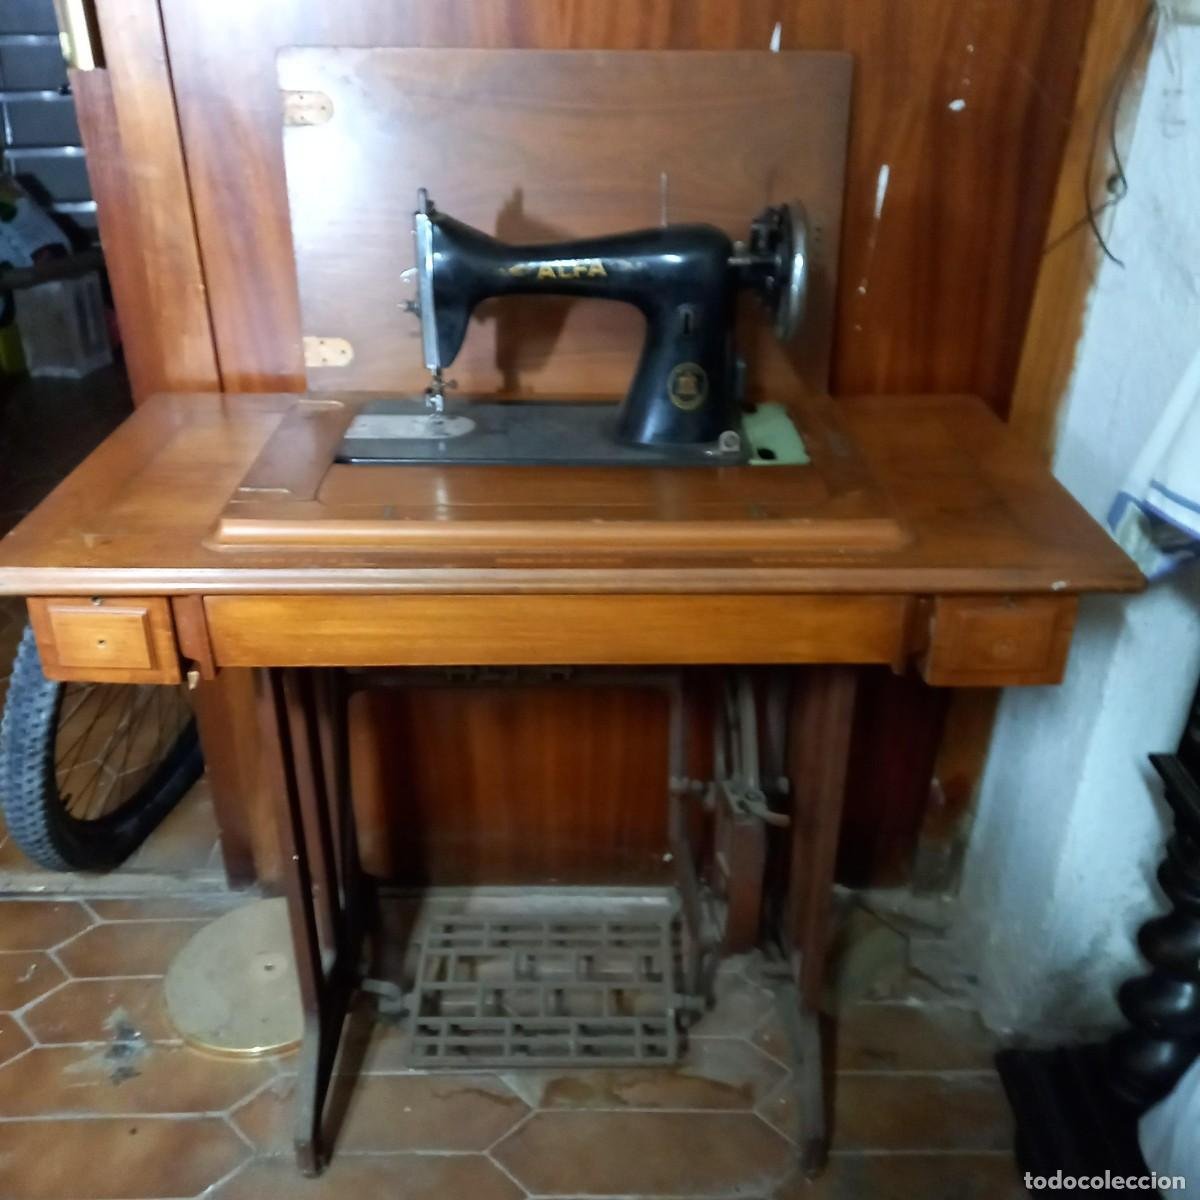 antigua maquina de coser alfa modelo 10047 - Compra venta en todocoleccion